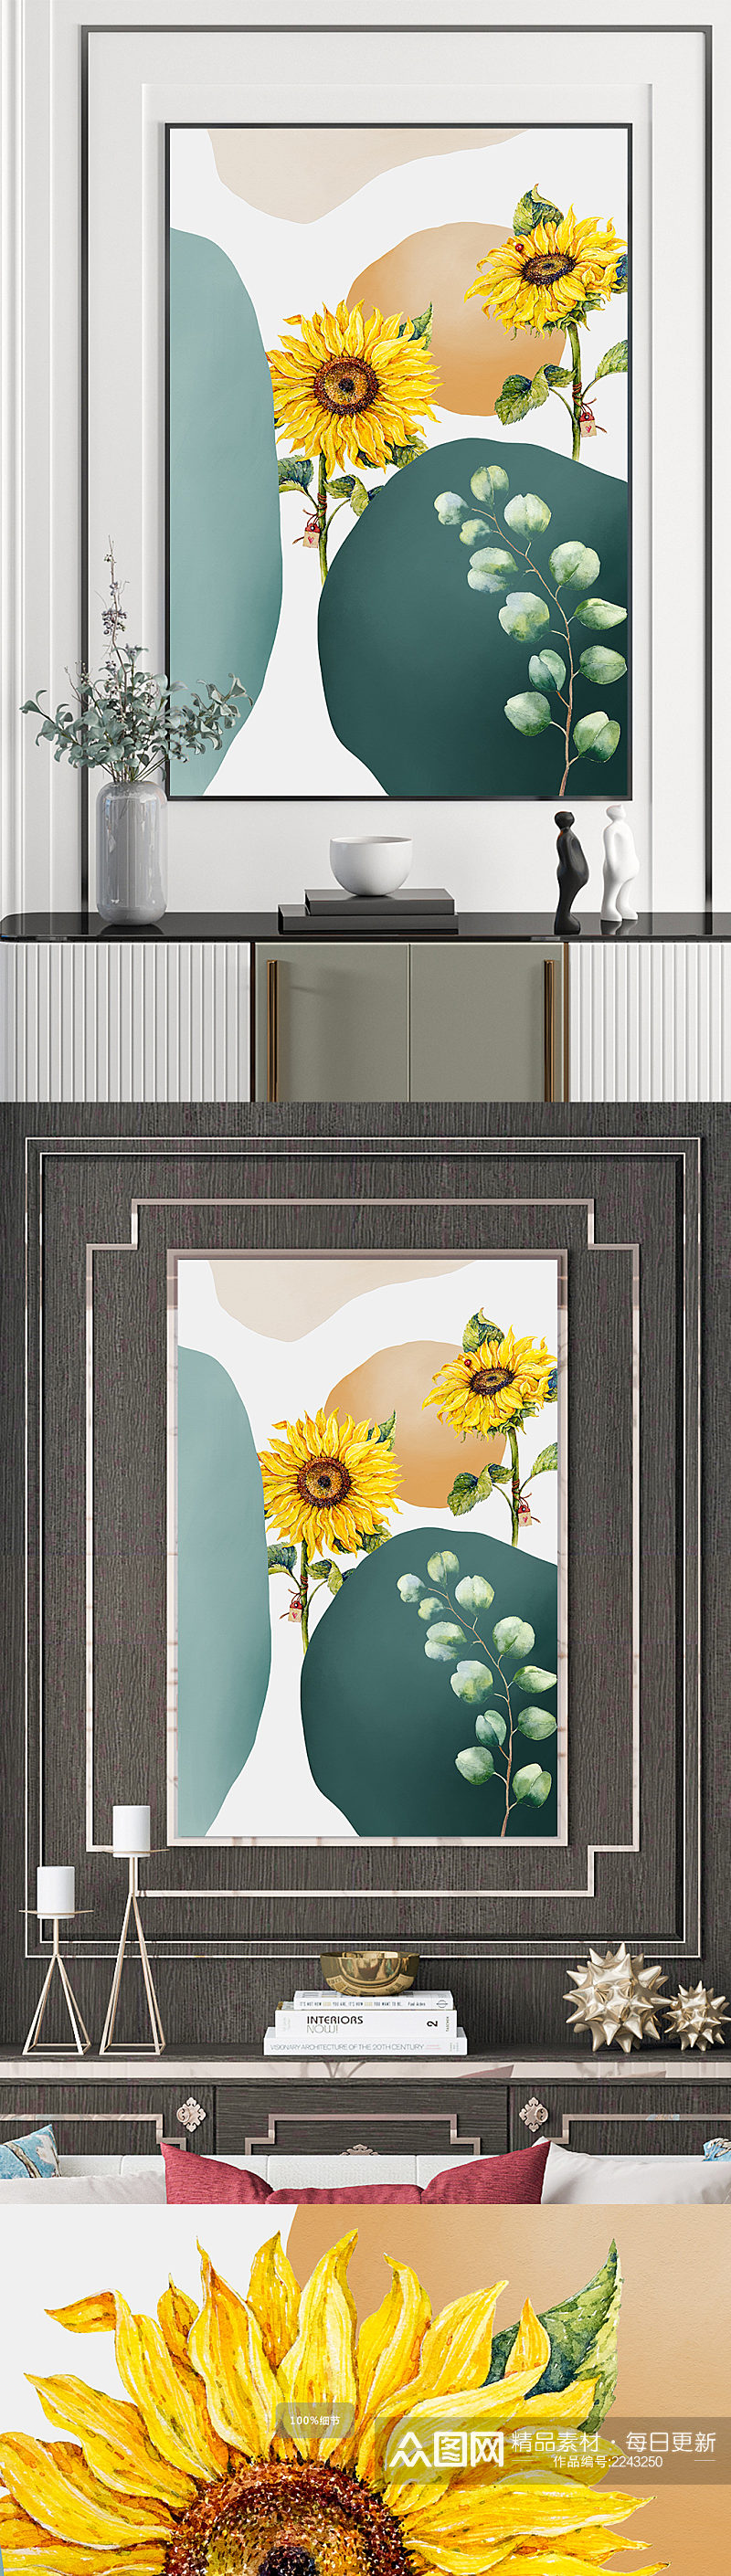 手绘向日葵花卉装饰画素材